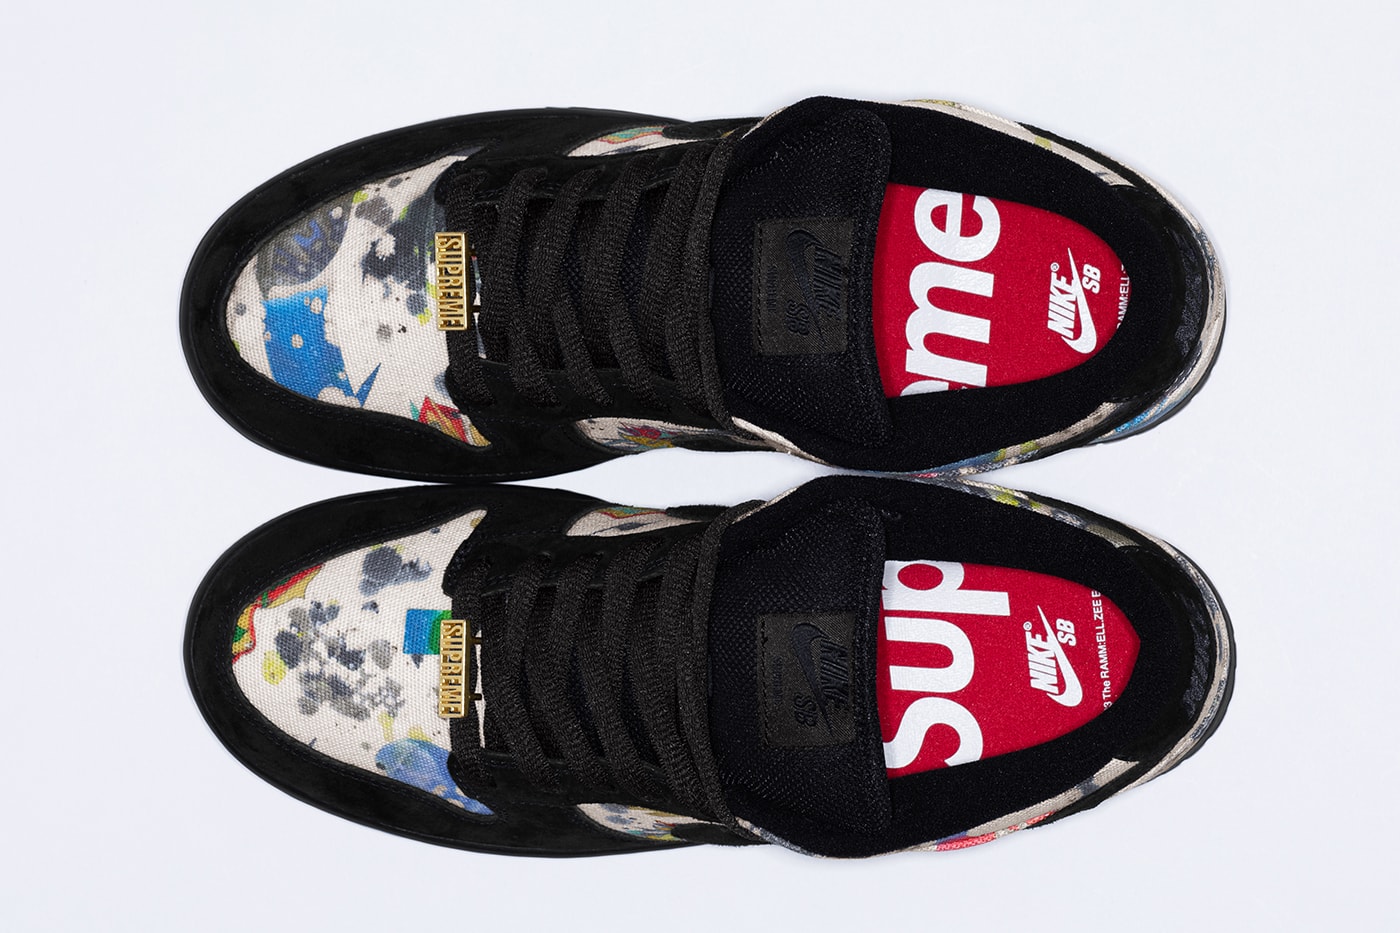 Nike x Supreme Fall Collection. Nike SNKRS